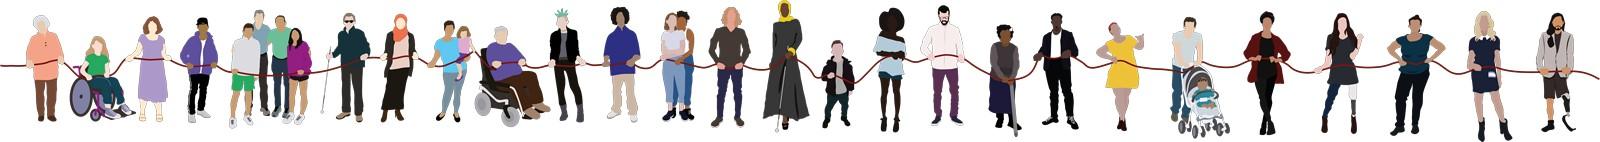 Unsere Menschenkette enthält mehr als zwanzig illustrierte, diverse Figuren.